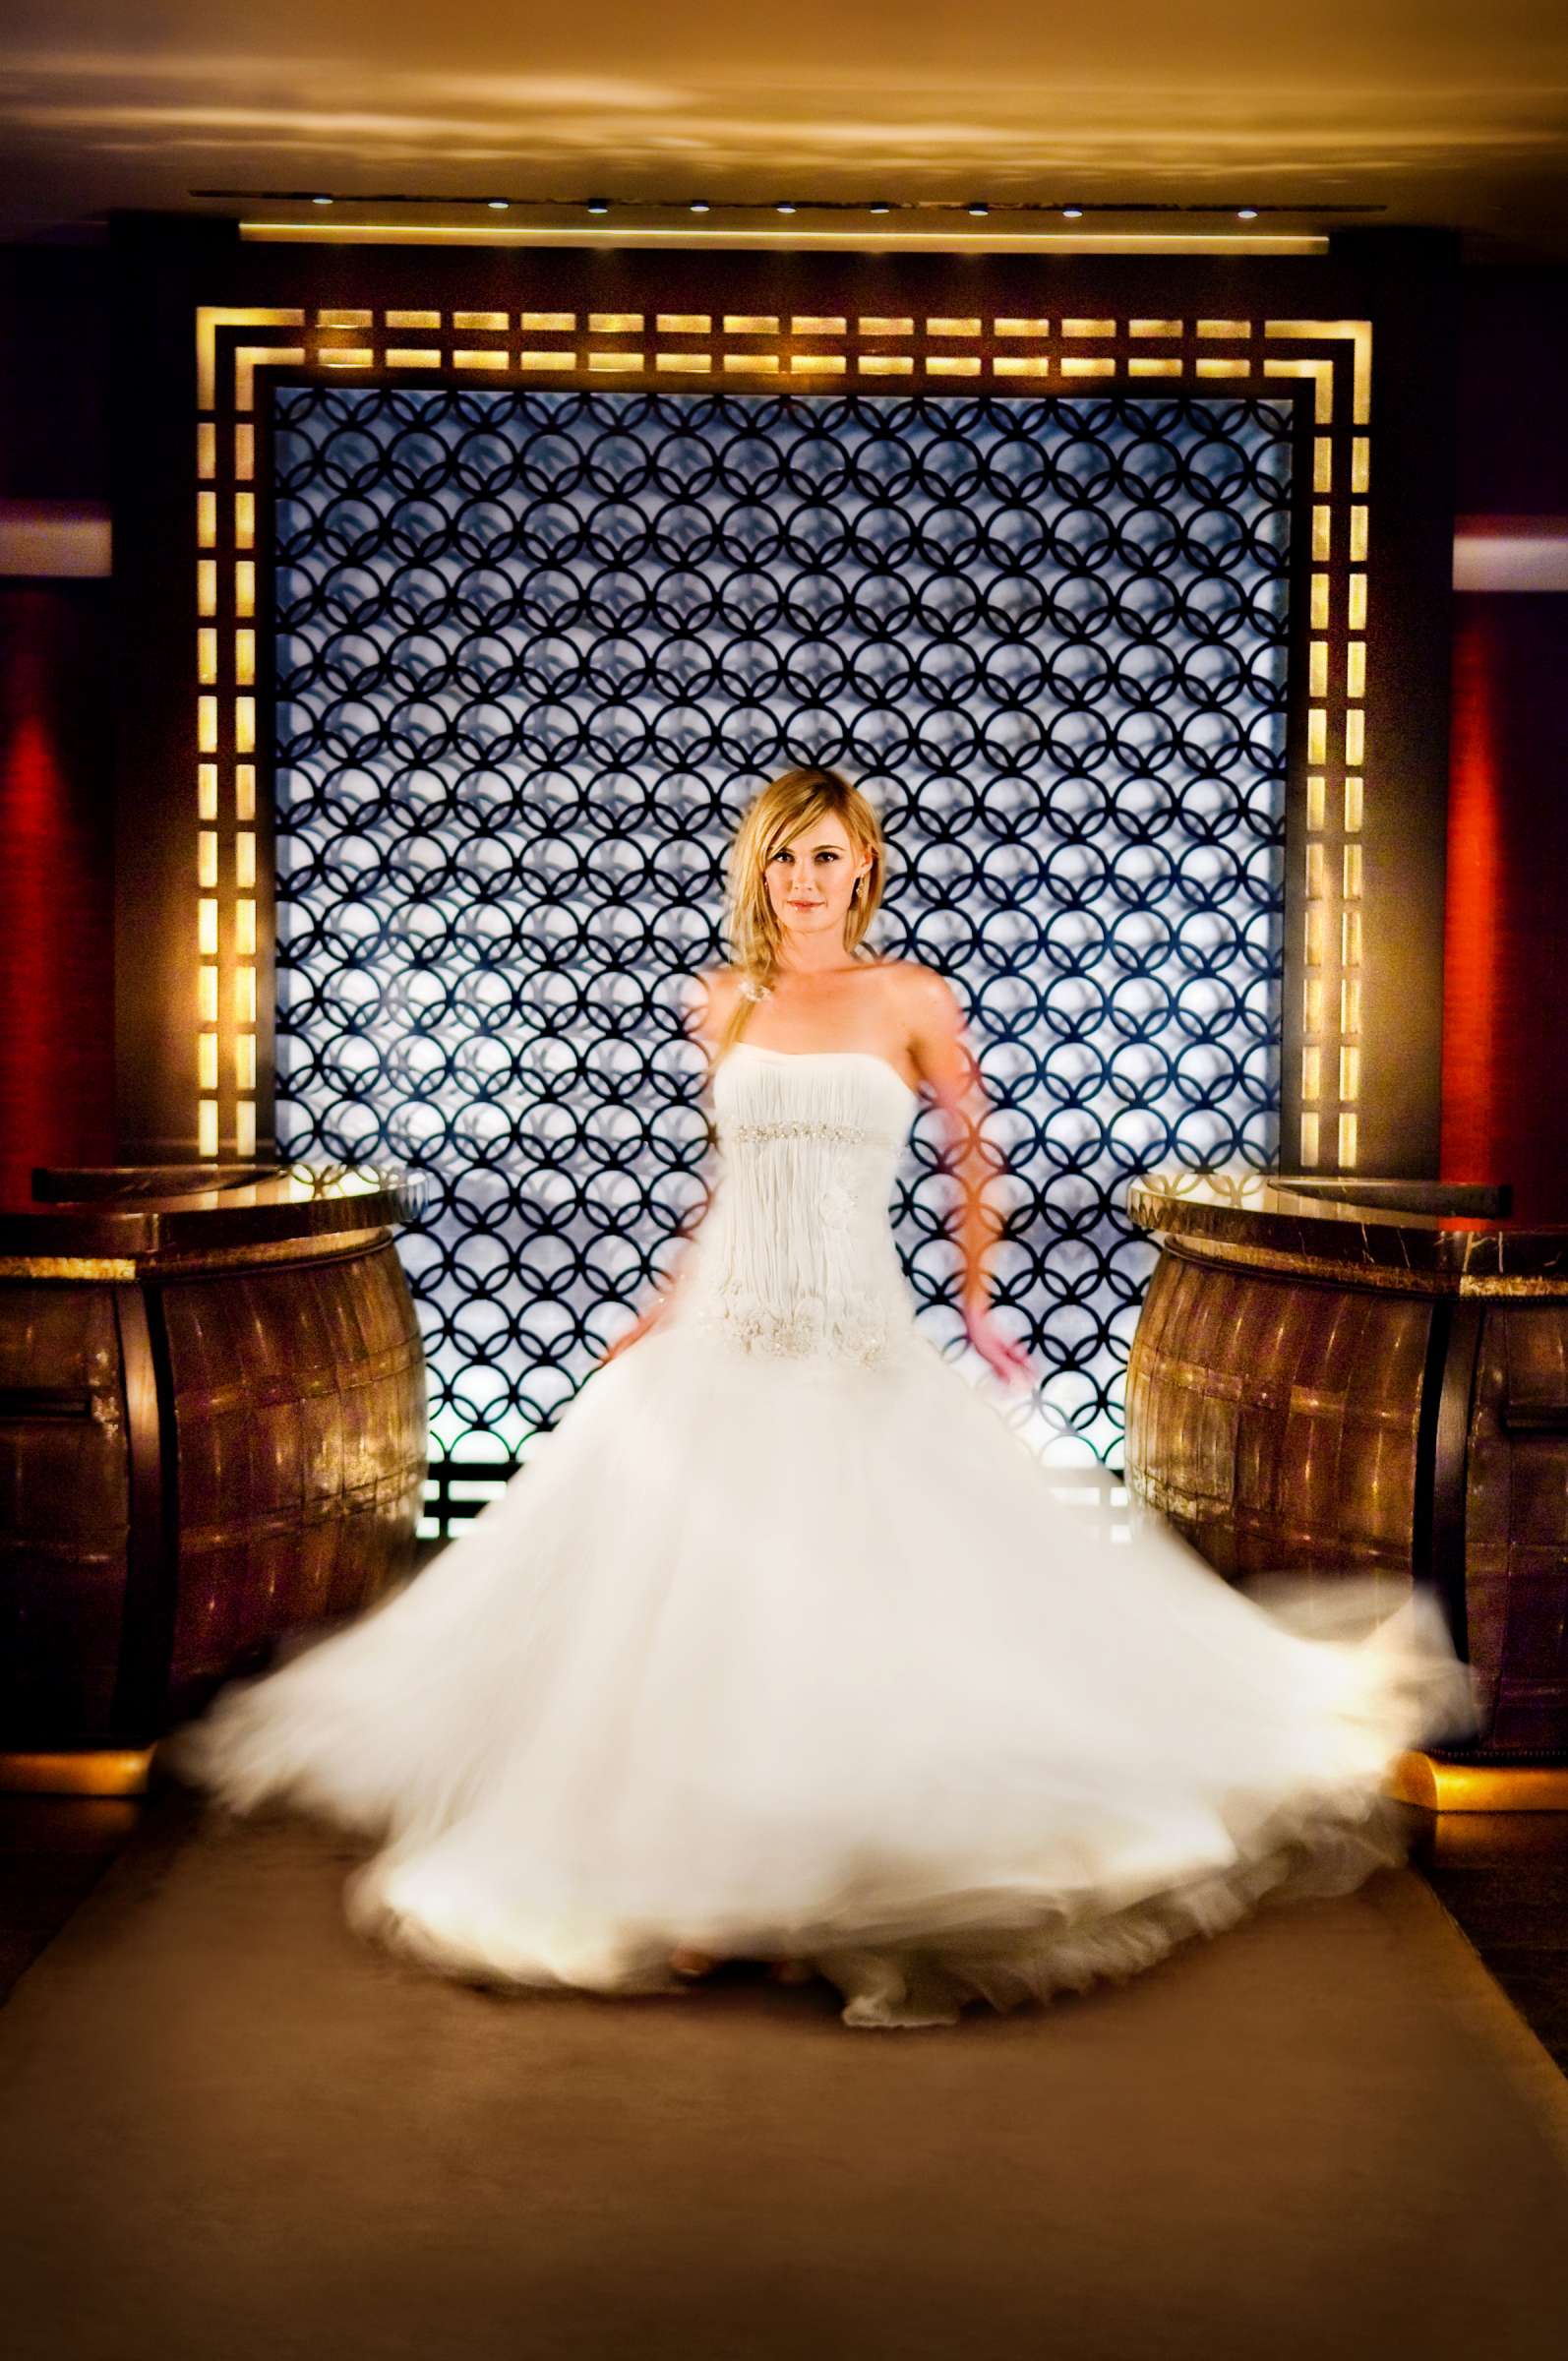 Fashion at Hotel Palomar San Diego Wedding, Hotel Palomar Exquisite Weddings Photo #10 by True Photography